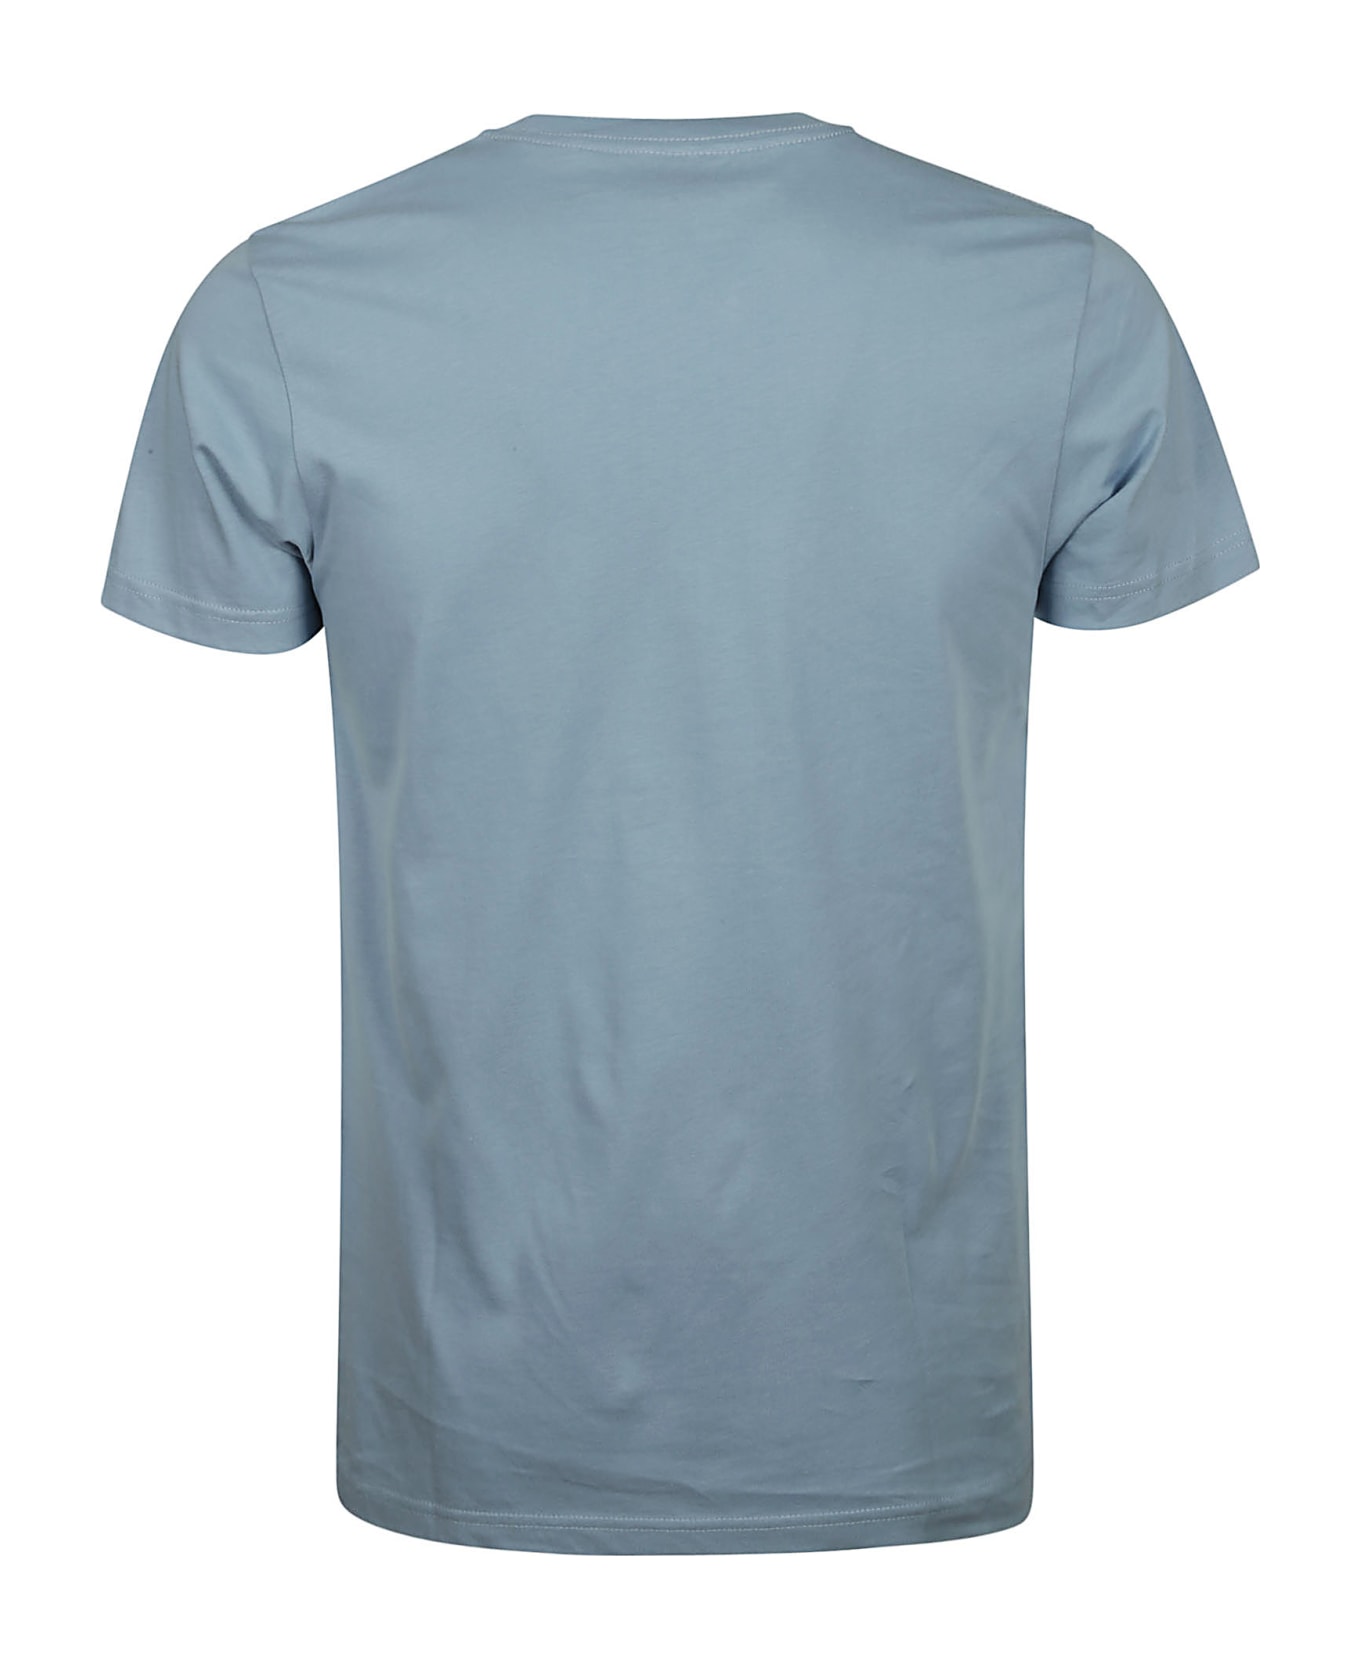 Paul Smith Slim Fit T-shirt Paint Test - D Light Blue